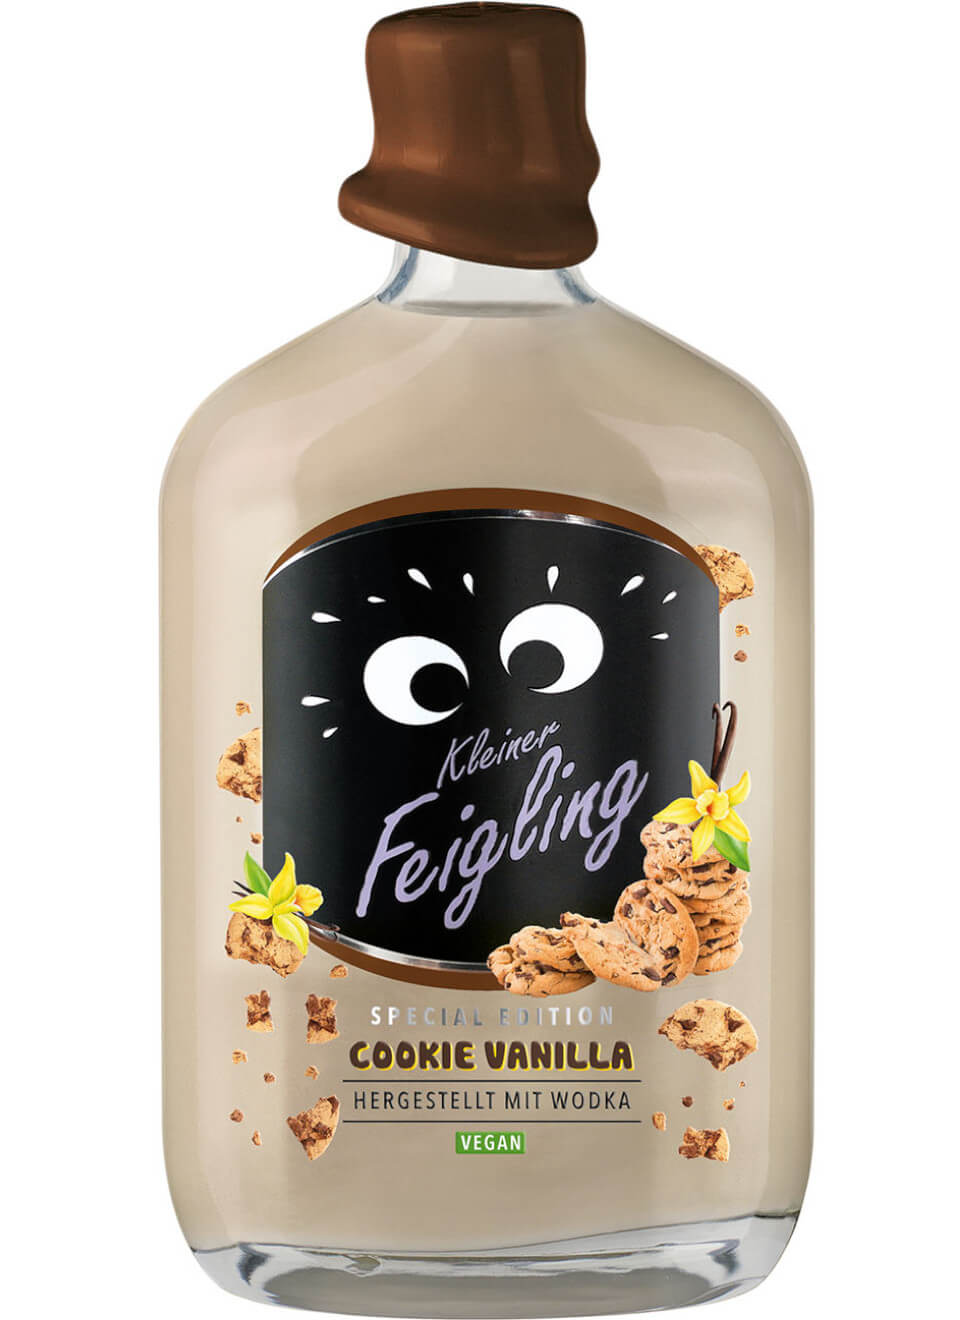 Kleiner Feigling Cookie Vanilla 0,5 L günstig kaufen | Spirituosenworld.de  - Online Shop für Spirituosen und Barzubehör | Likör